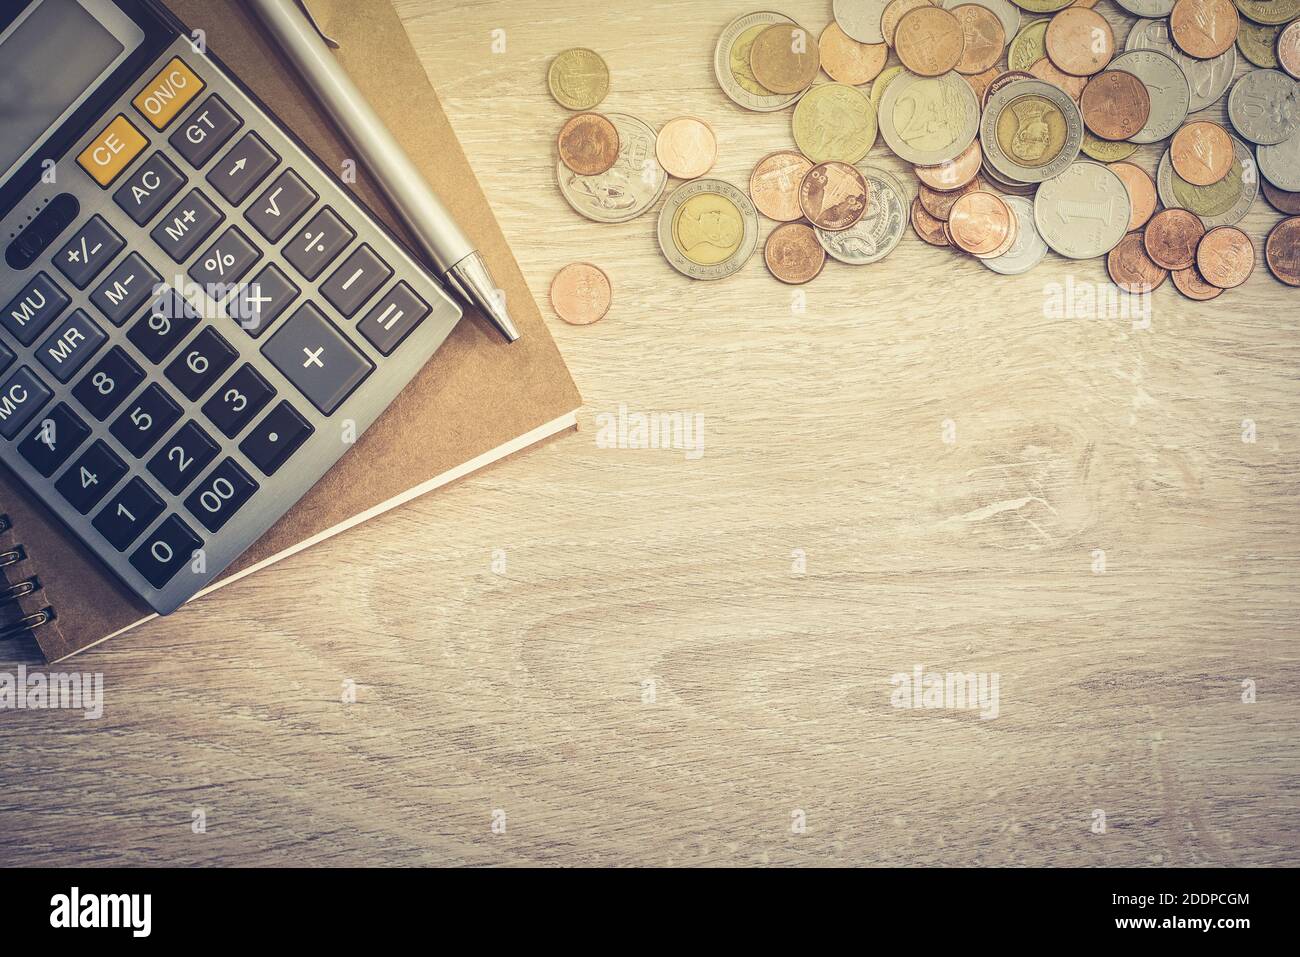 Soldi (monete), calcolatrice e qualche cancelleria su tavolo di legno, vista dall'alto con copy space - concetto di fondo finanziario Foto Stock